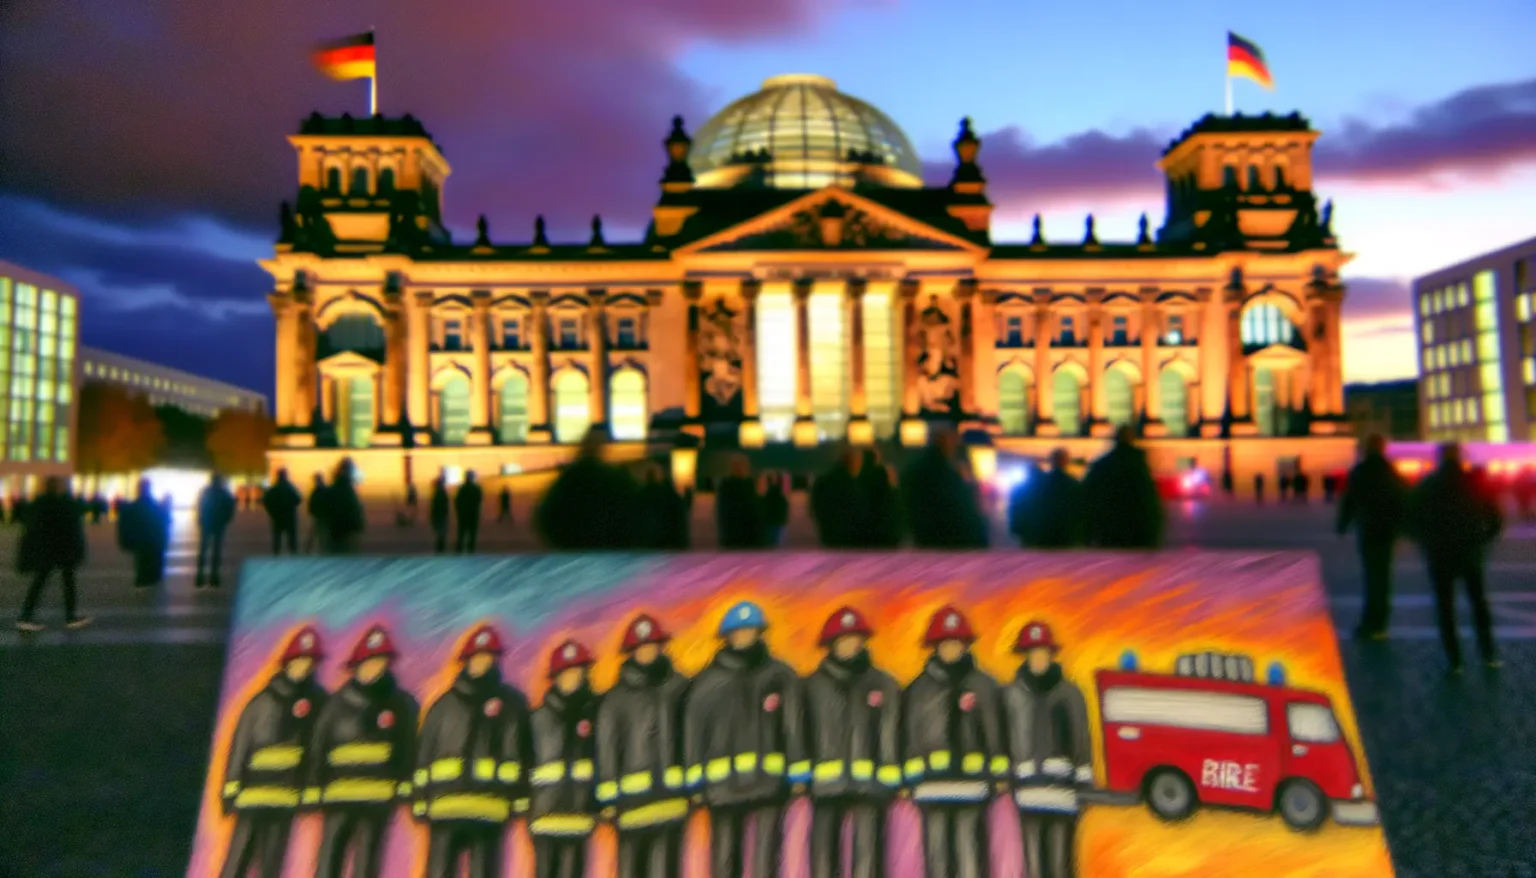 Verschwommenes Bild des Berliner Reichstagsgebäudes bei Abenddämmerung mit beleuchteten Fenstern und einer wehenden deutschen Flagge auf dem Dach, im Vordergrund unscharfe Silhouetten von Menschen, die sich anscheinend auf dem Platz vor dem Gebäude aufhalten. Im unteren Teil des Bildes ist ein unscharfes, kindlich gezeichnetes Bild von Feuerwehrleuten in einer Reihe mit einem roten Feuerwehrauto platziert.